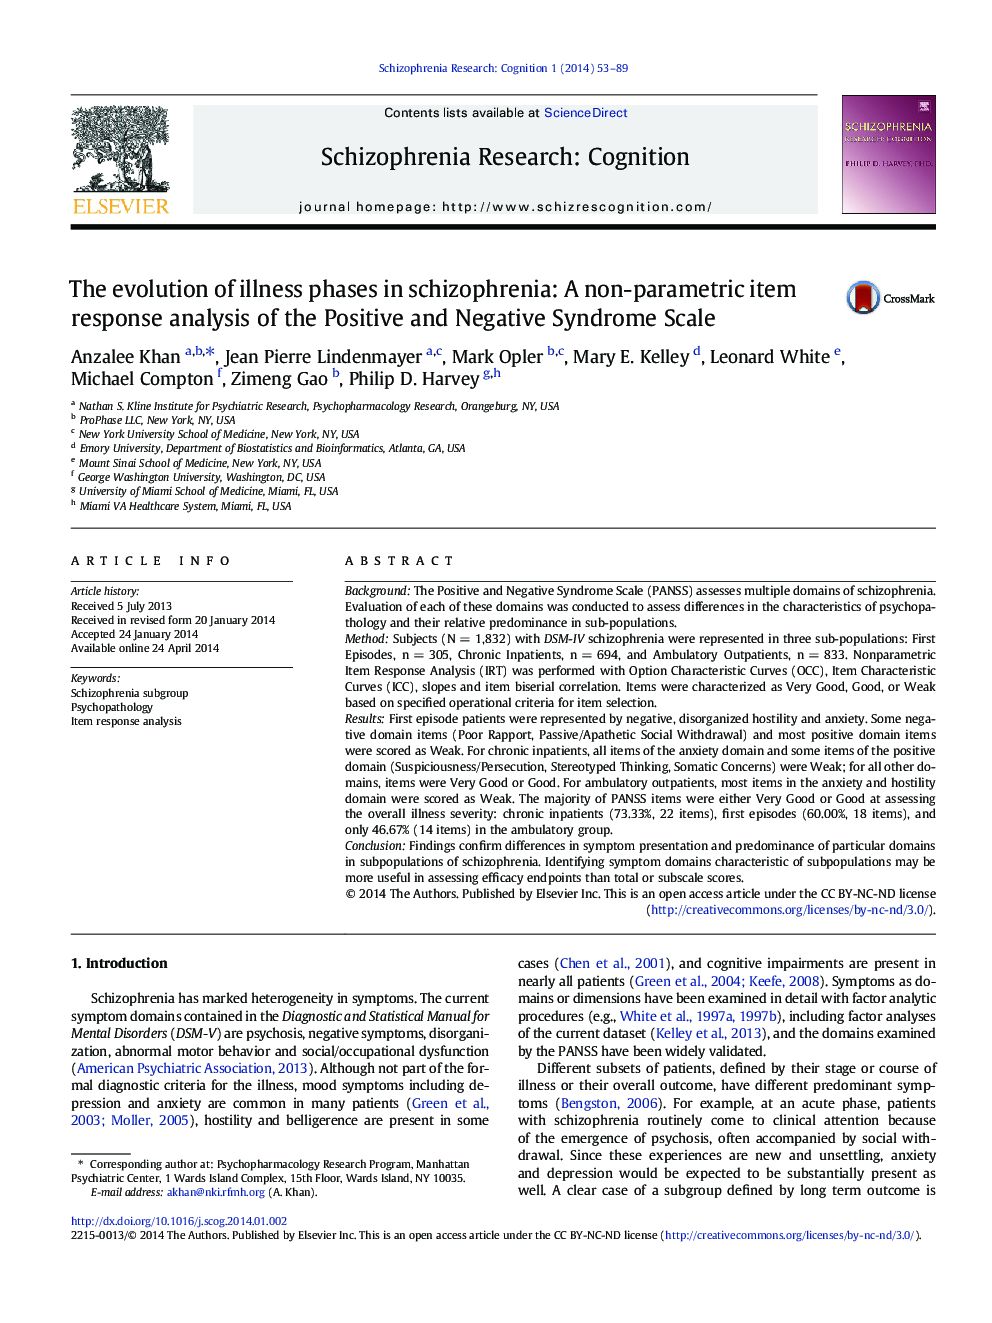 تکامل مراحل بیماری در اسکیزوفرنی: تجزیه و تحلیل واکنش آیتم های غیر پارامتری از مقیاس های مثبت و منفی سندرم 